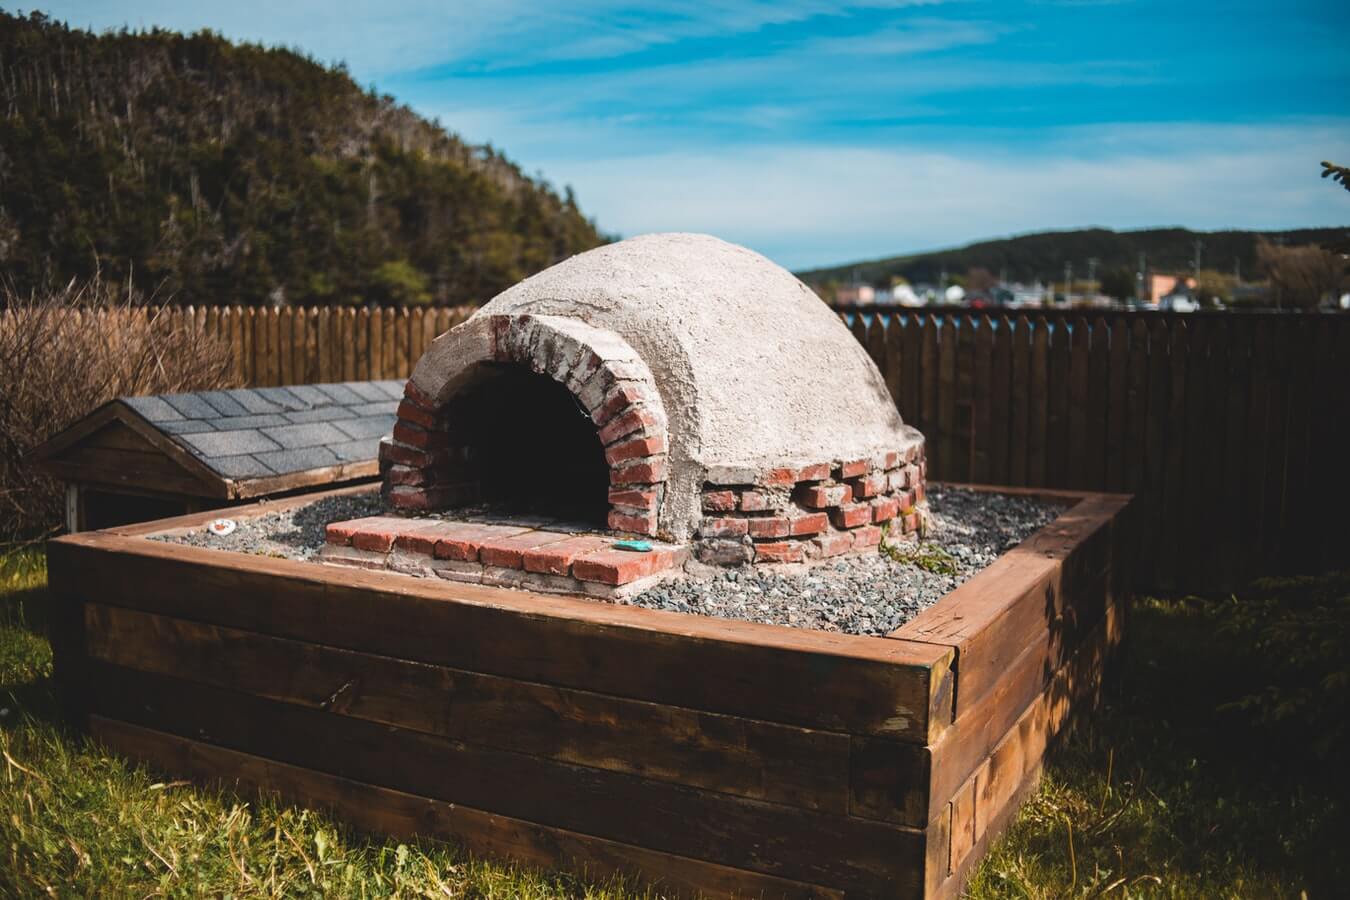 diy outdoor pizza oven